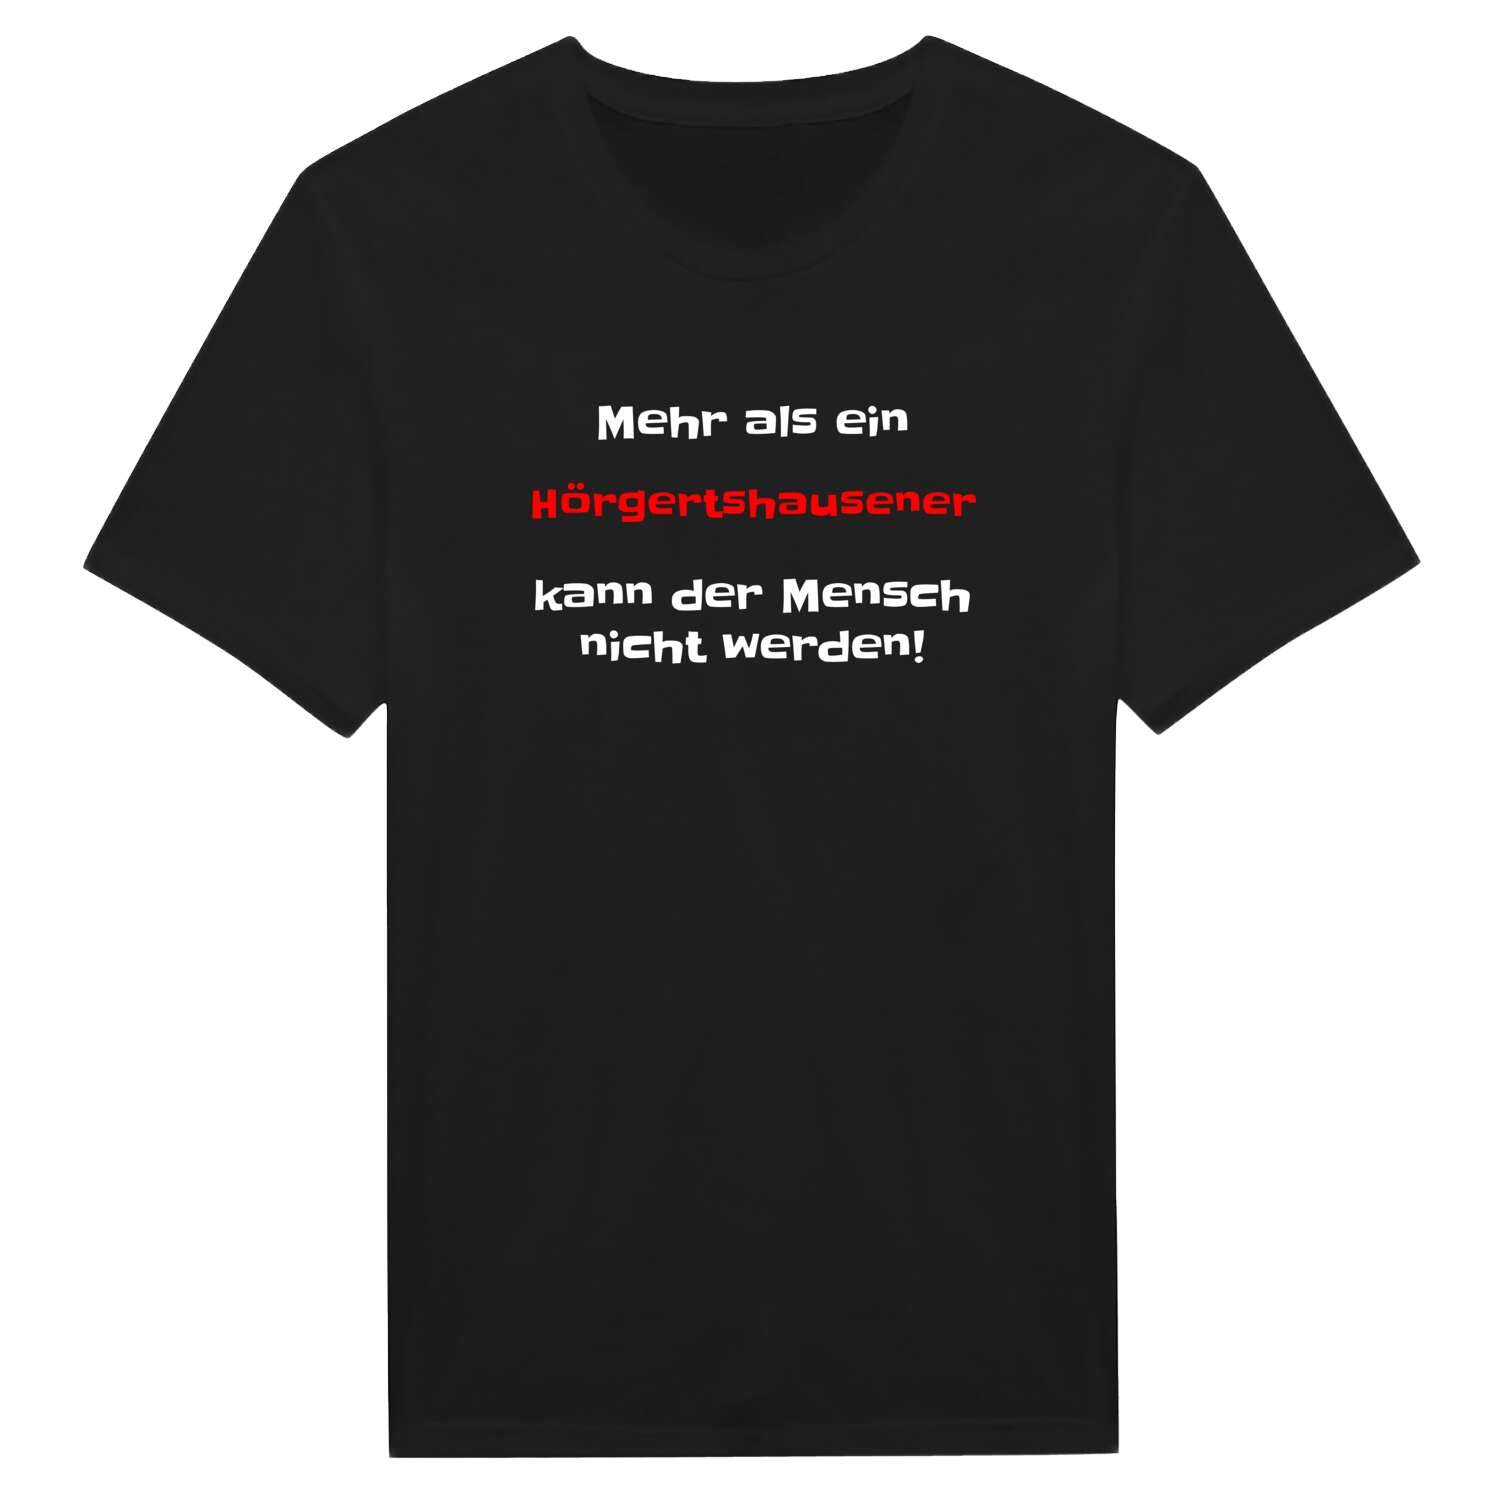 Hörgertshausen T-Shirt »Mehr als ein«